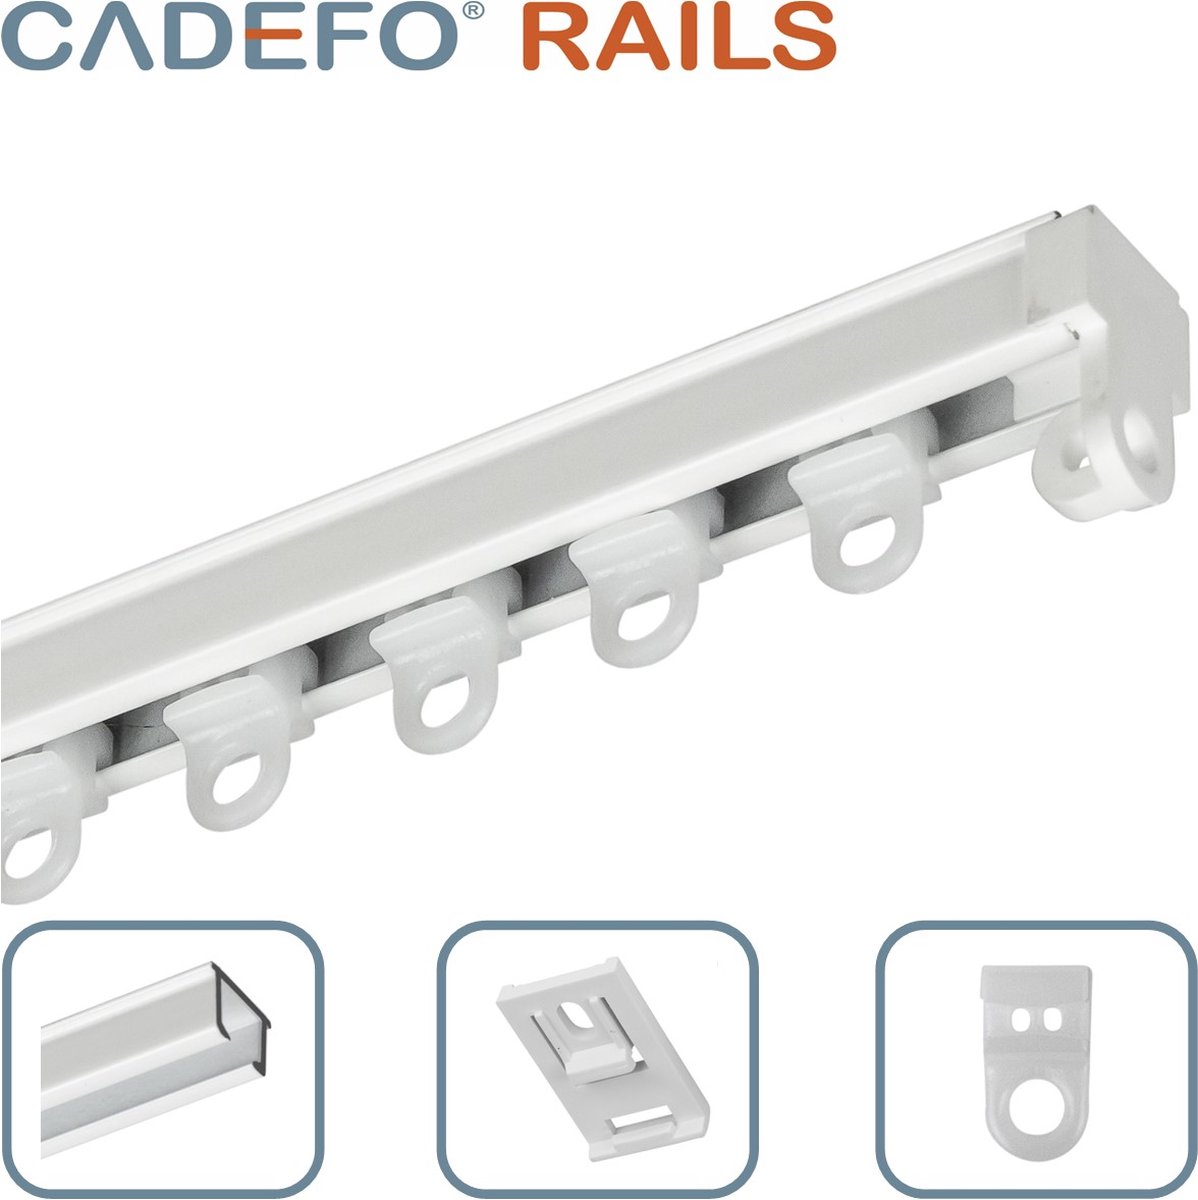 CADEFO RAILS (401 - 450 cm) Gordijnrails - Compleet op maat! - UIT 1 STUK - Leverbaar tot 6 meter - Plafondbevestiging - Lengte 407 cm